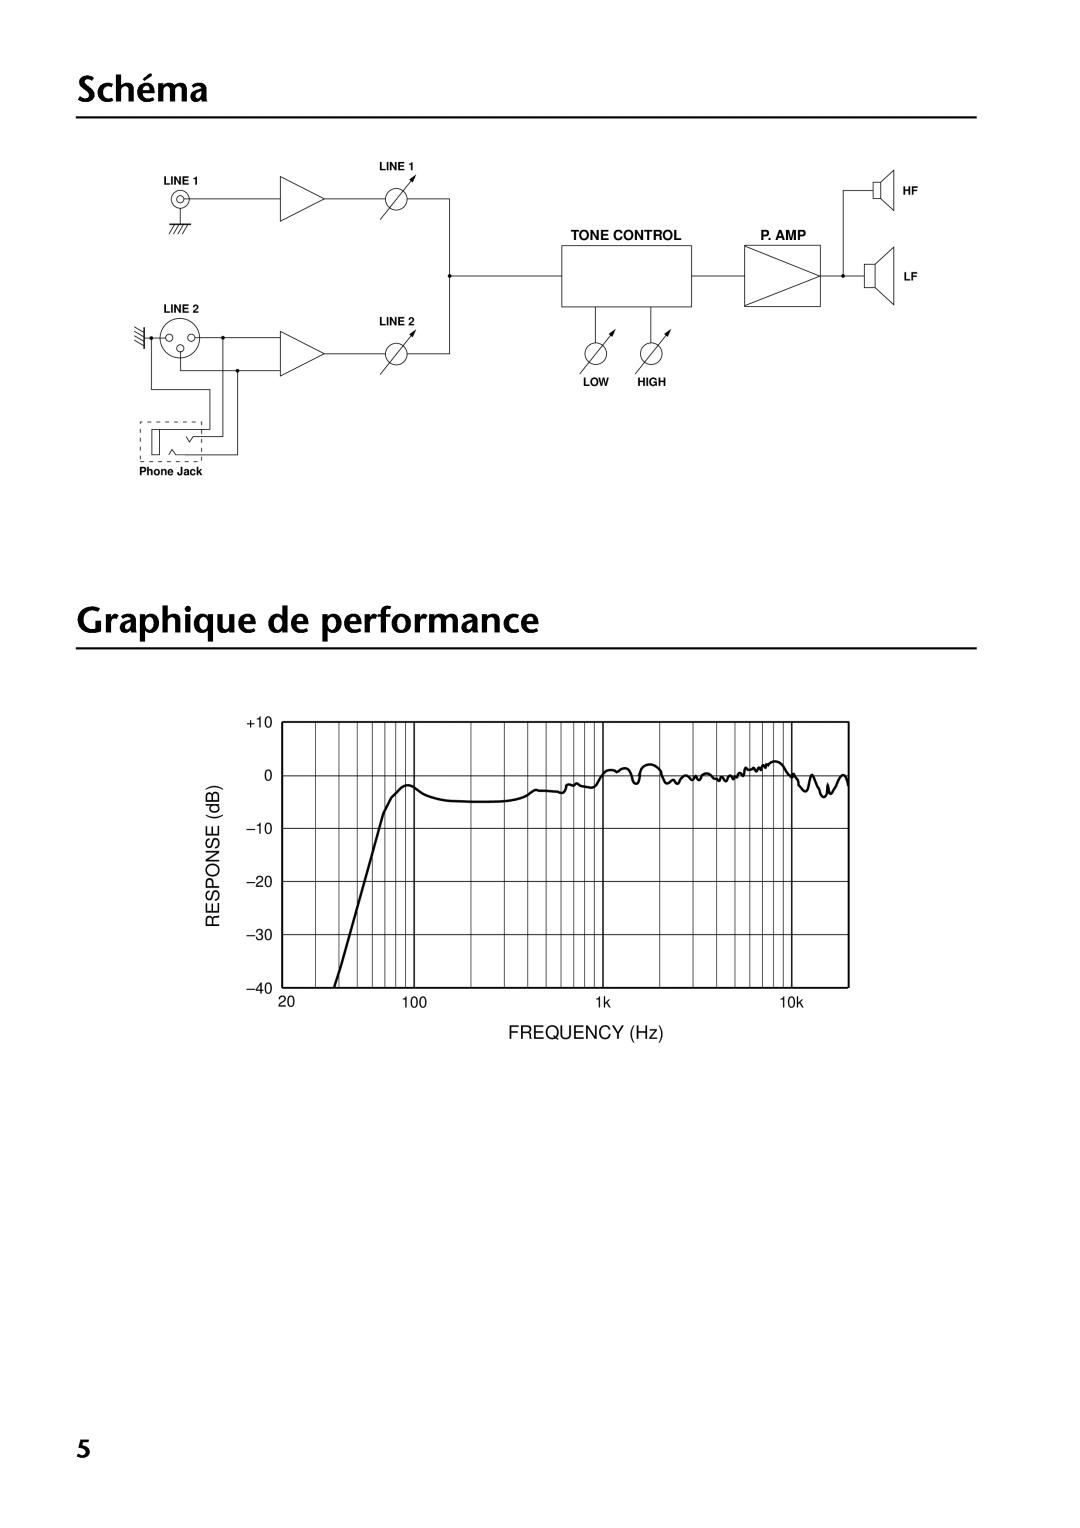 Yamaha MSP3 Schéma, Graphique de performance, RESPONSE dB, FREQUENCY Hz, +10 0, Tone Control, P. Amp, Line Line, Low High 